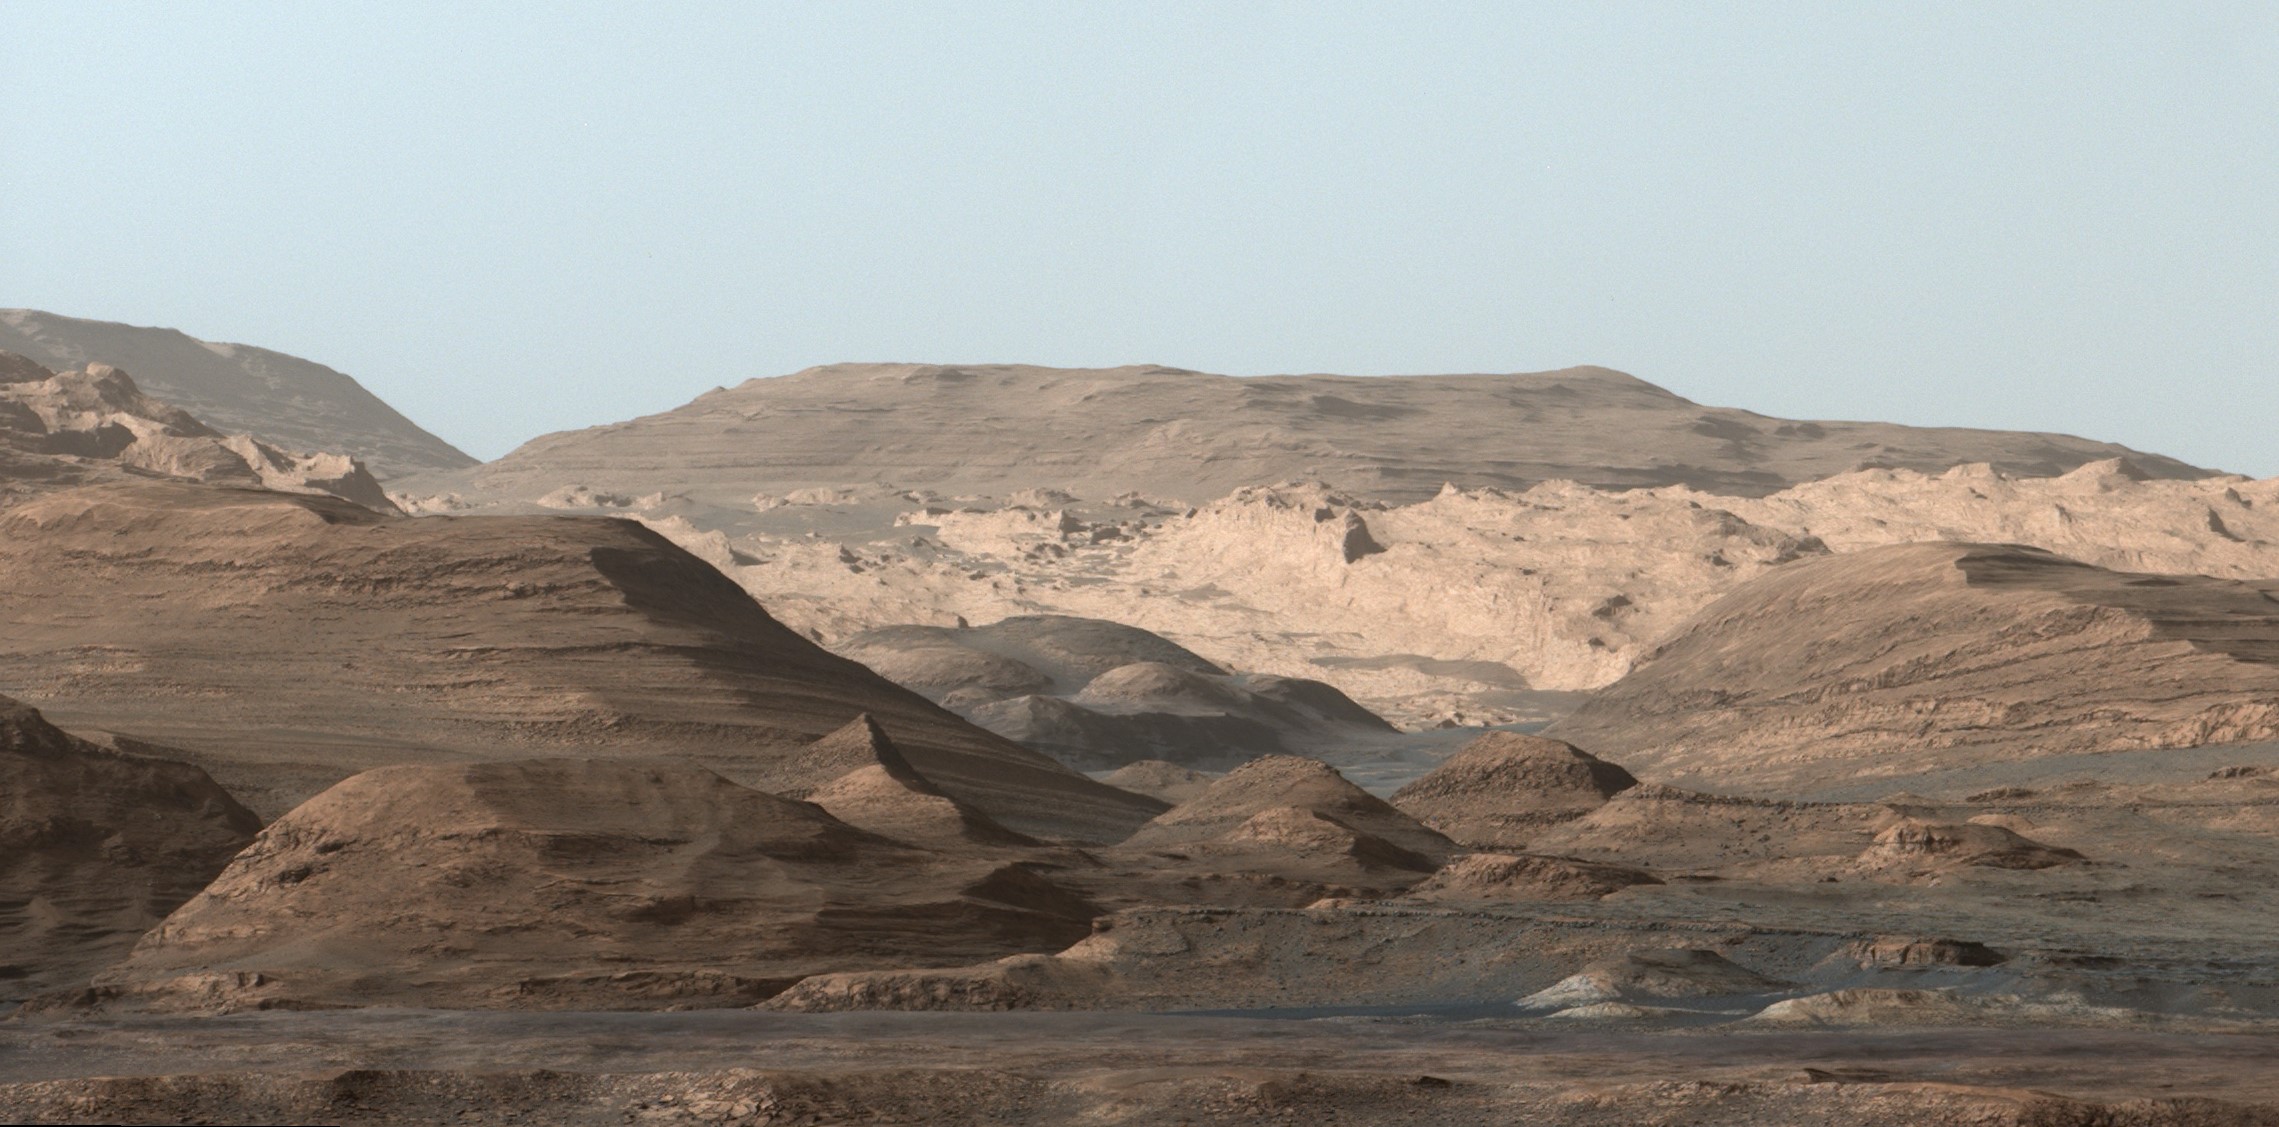 L'environnement martien photographié par Curiosity en 2015.&nbsp;© Nasa, JPL-Caltech, MSSS